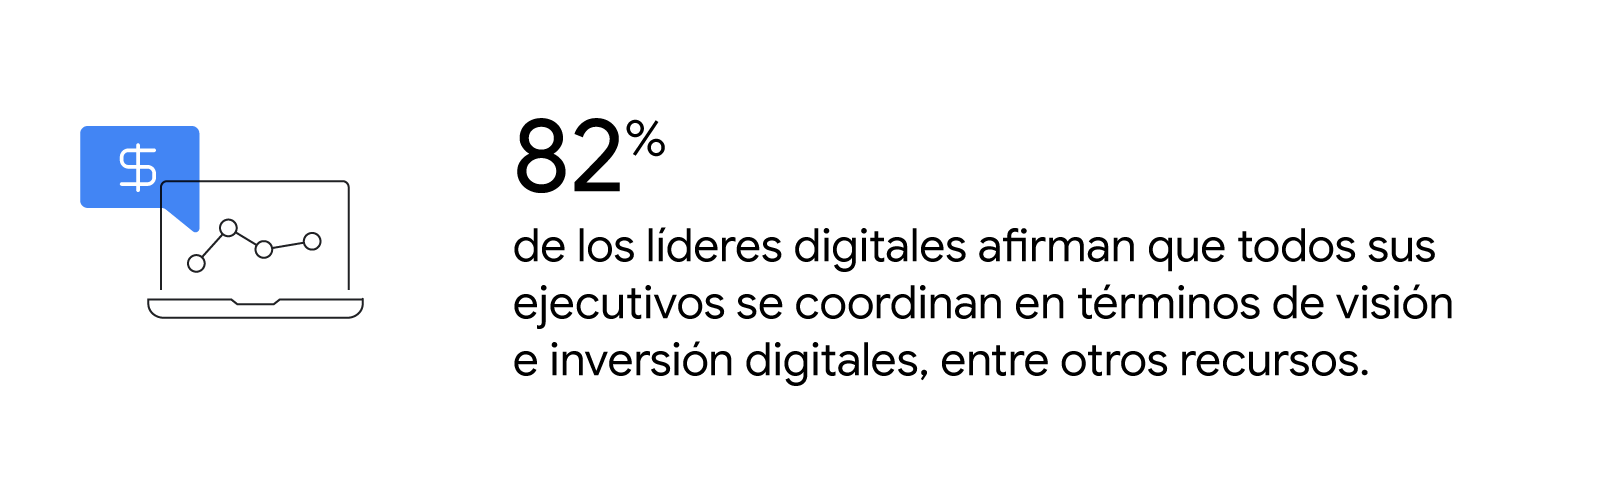 La pantalla de un portátil muestra un gráfico de crecimiento. El 82 % de los líderes digitales afirman que todos sus ejecutivos se coordinan en términos de visión e inversión digitales, entre otros recursos.